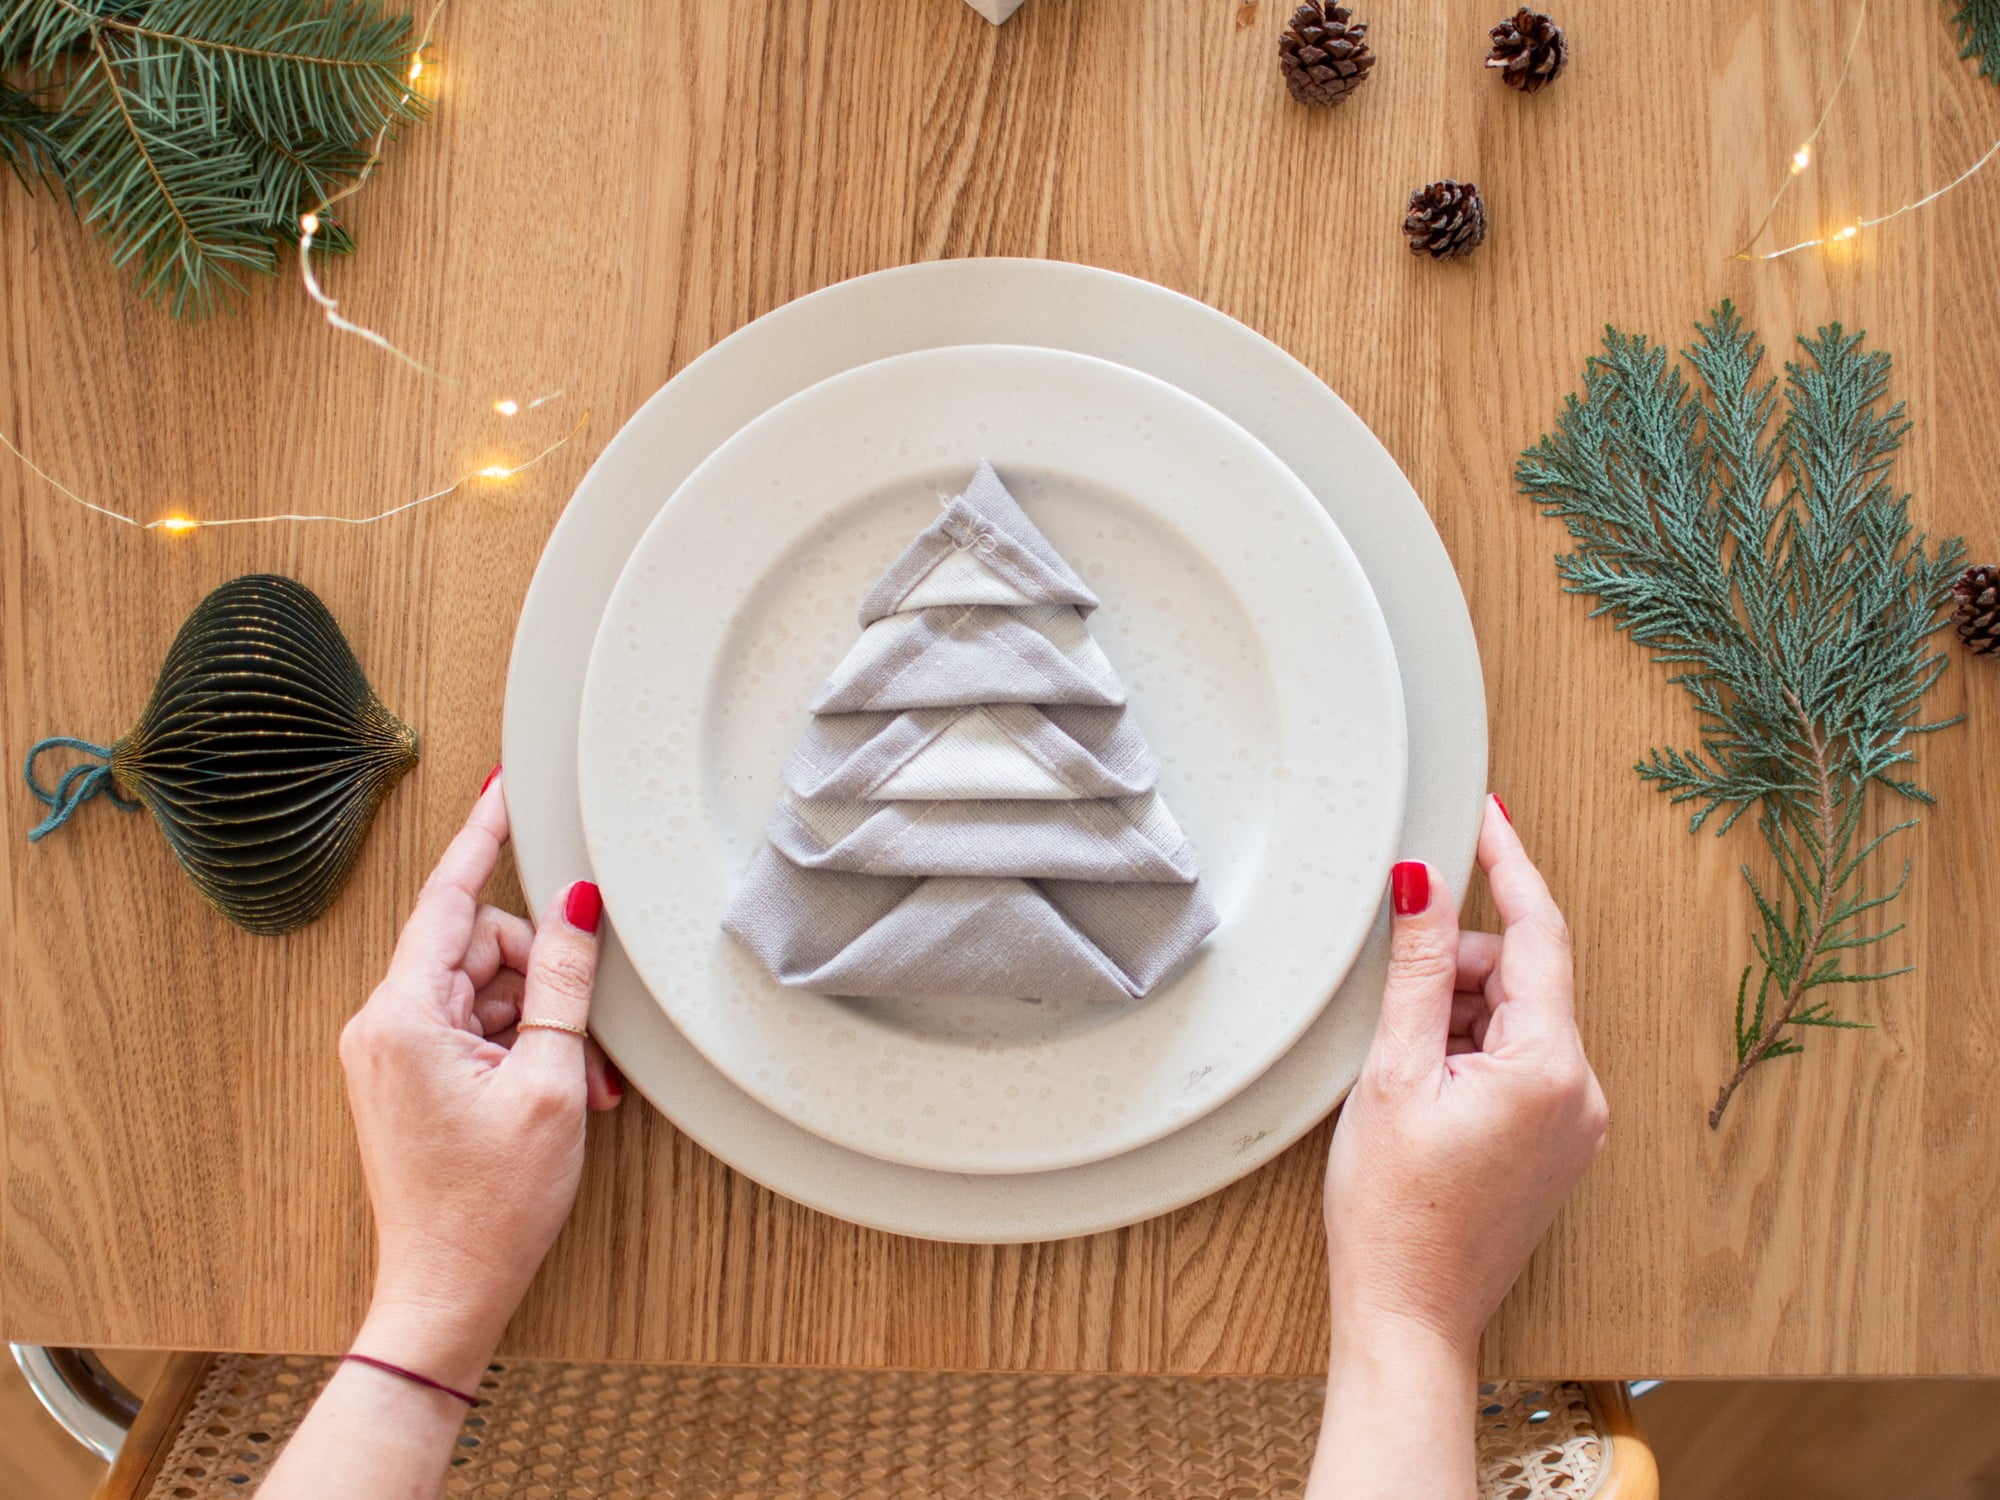 Inspirace na vánoční prostírání – složte ubrousky do tvaru stromečku